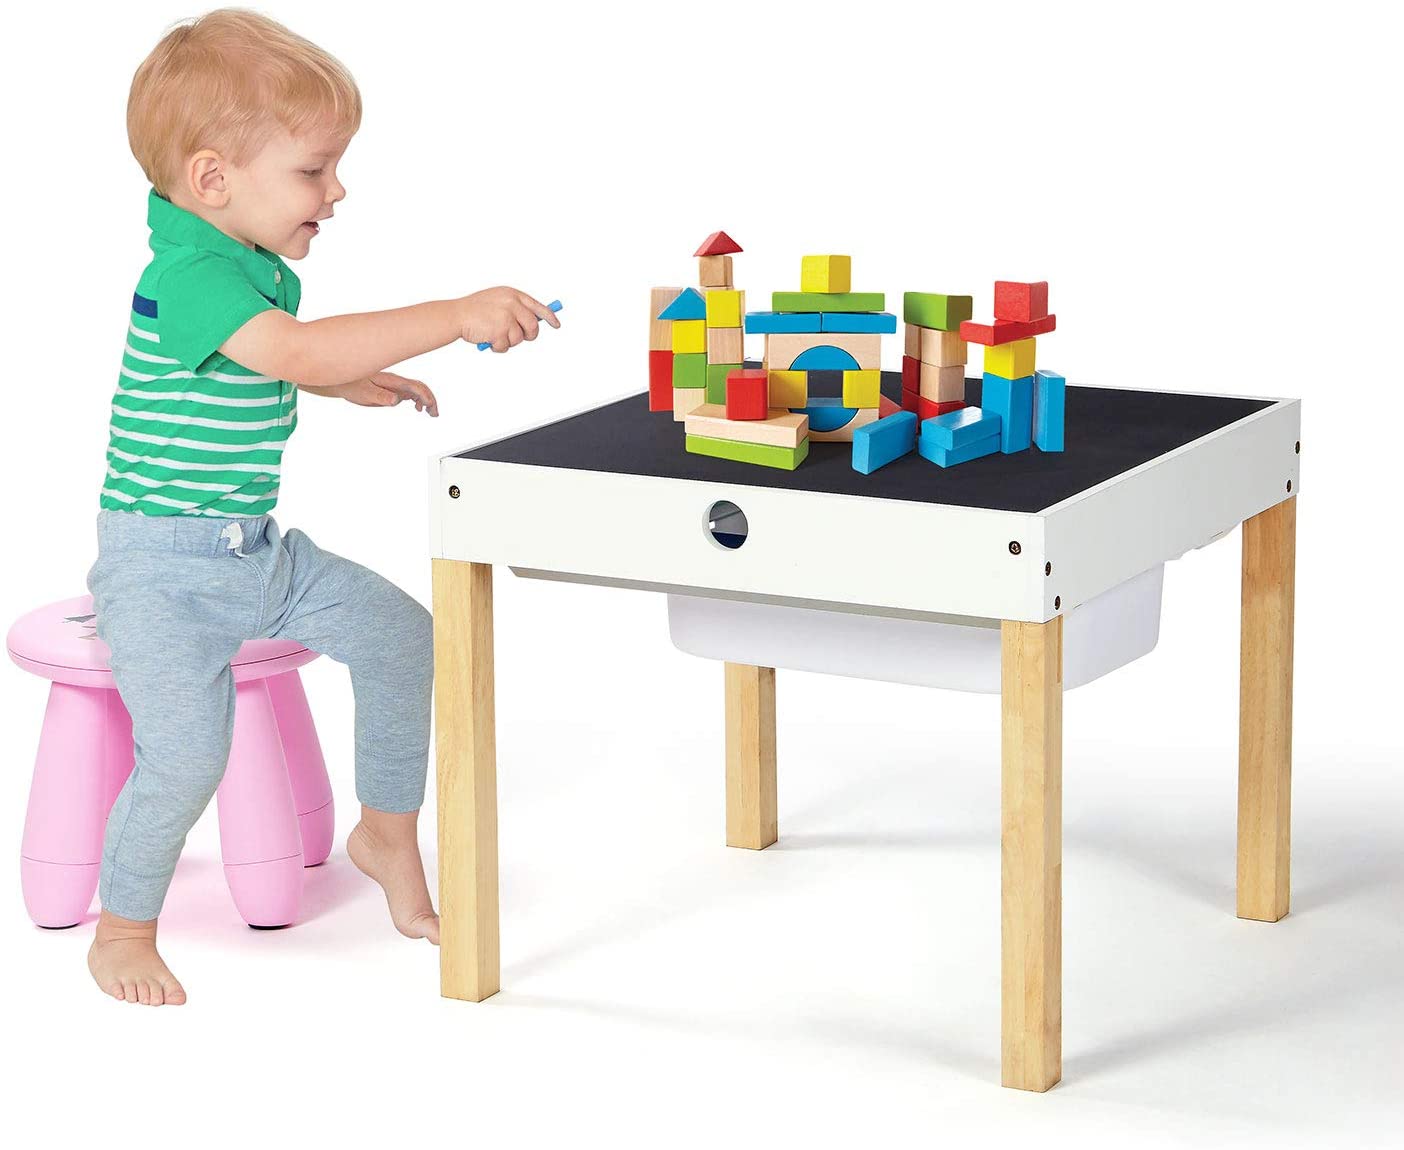 Overeenkomstig met Veronderstellen Accumulatie 4-in-1 houten multi-activiteitentafel voor kinderen | Schoolbord & Lego Top  | Kruk - www.littlehelper.co.uk